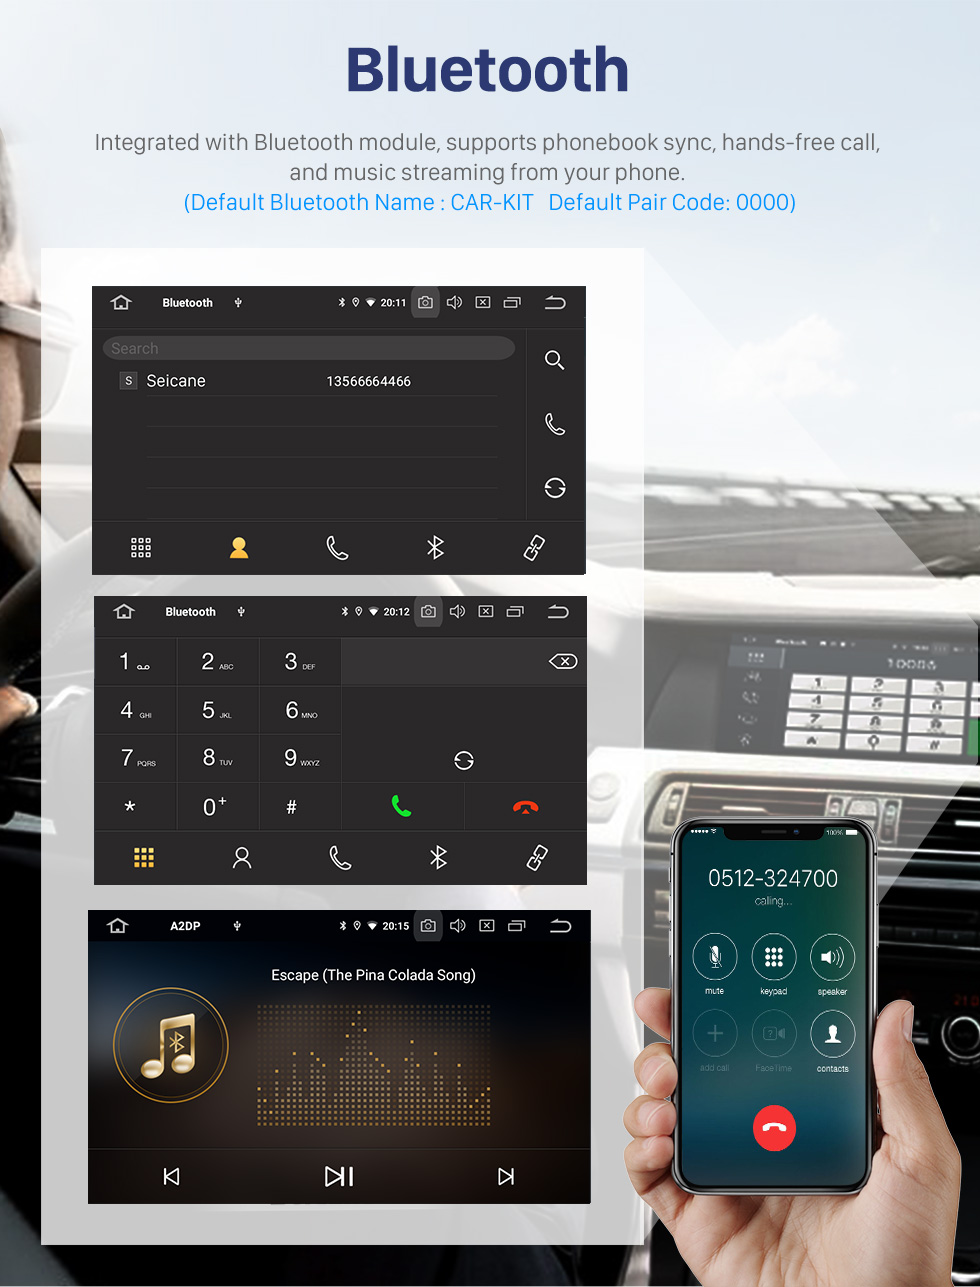 Seicane OEM 9 pouces Android 10.0 Radio pour 1997-2004 Audi A6 S6 RS6 Bluetooth HD Écran tactile Navigation GPS AUX Prise en charge USB Carplay DVR OBD Caméra de recul